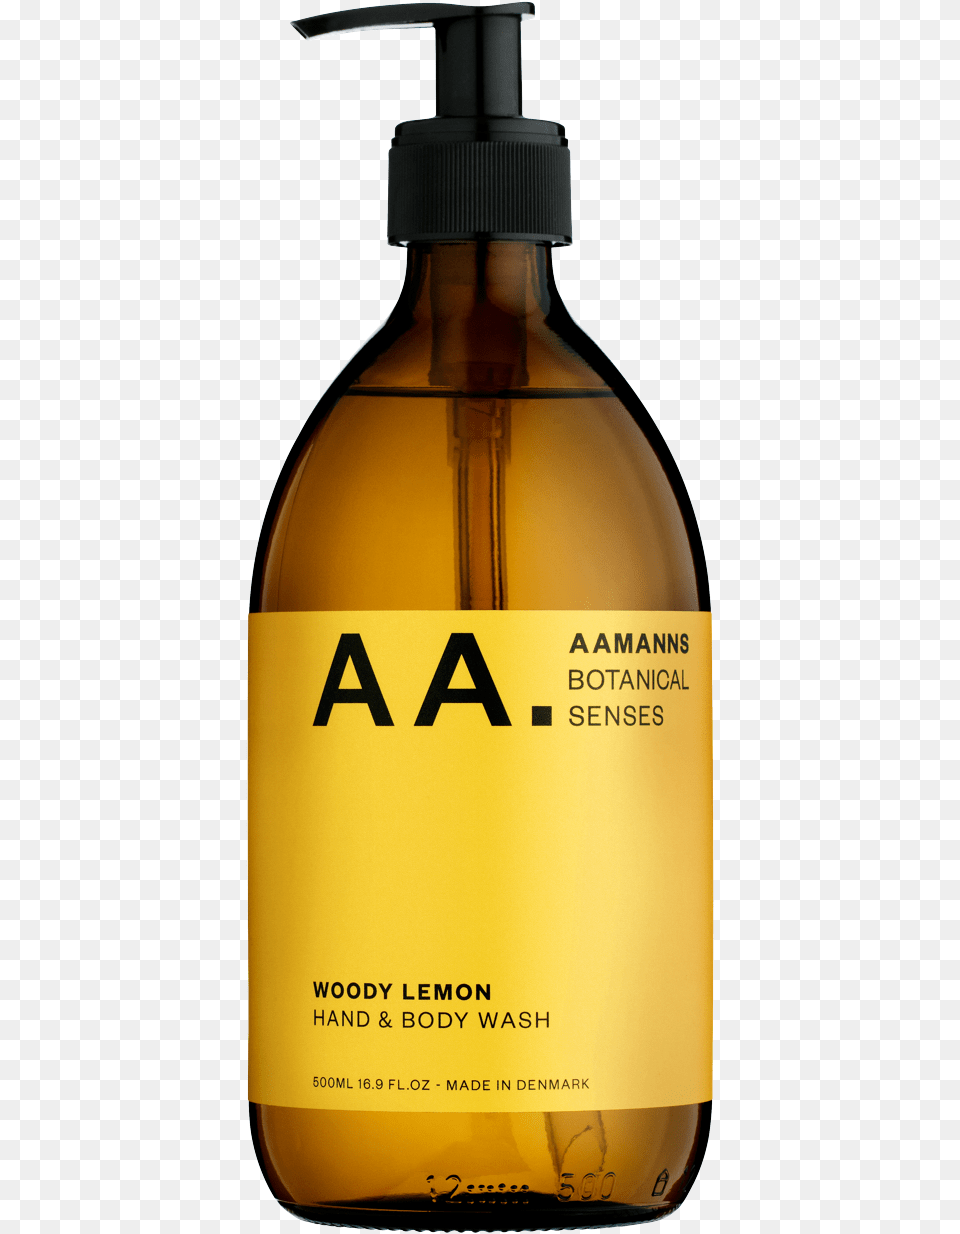 Abs Woody Lemon Final Transparent, Bottle, Alcohol, Beer, Beverage Png Image